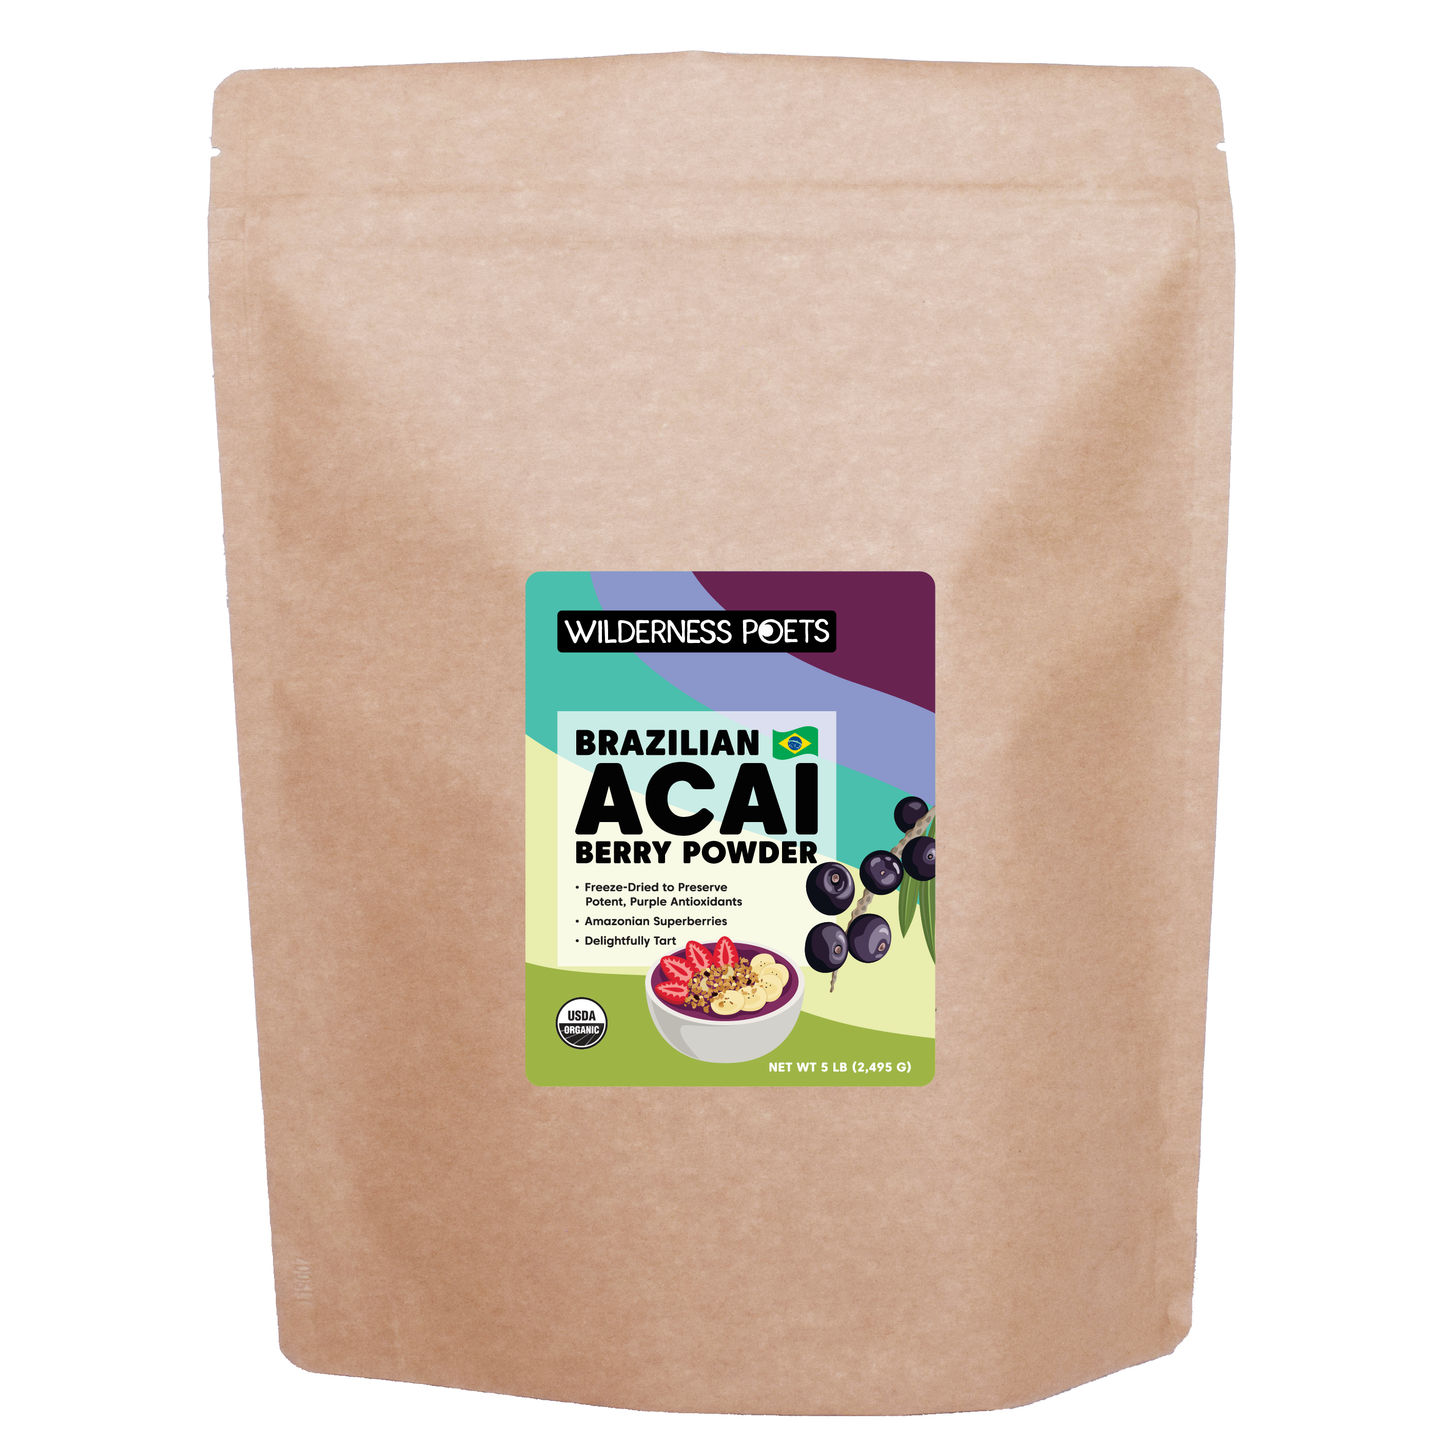 Acai Powder - Freeze Dried, Organic